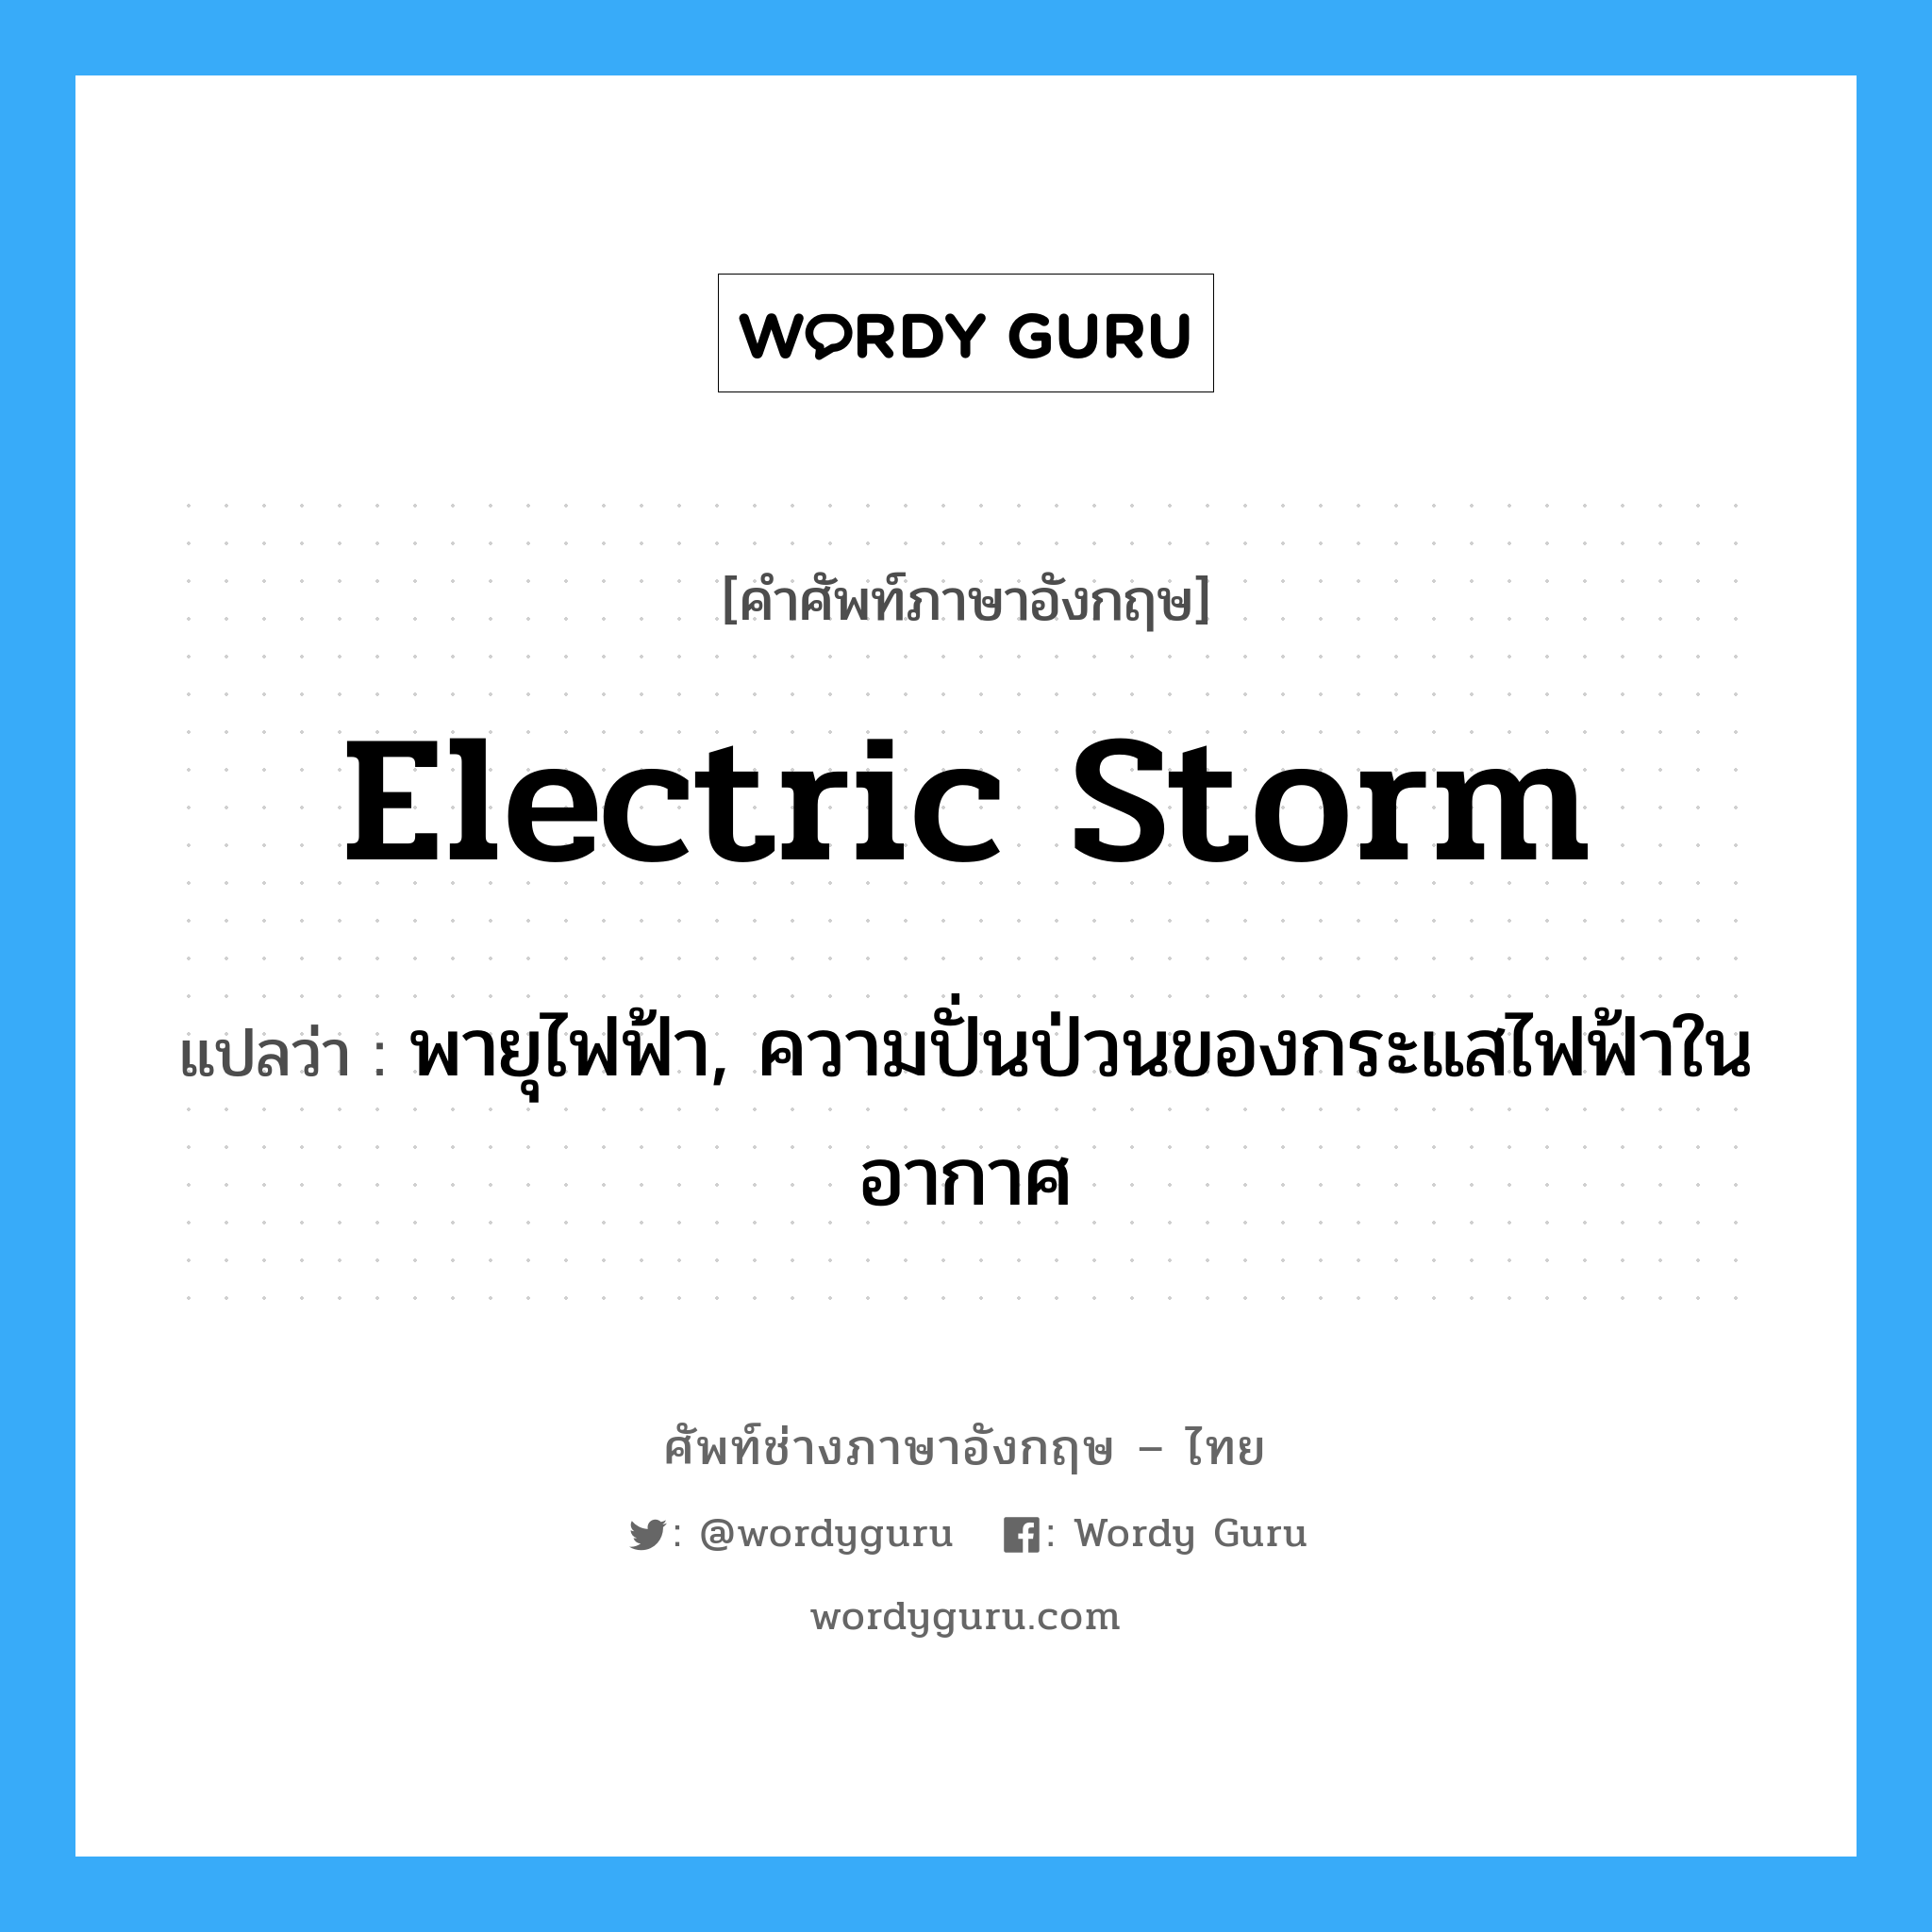 electric storm แปลว่า?, คำศัพท์ช่างภาษาอังกฤษ - ไทย electric storm คำศัพท์ภาษาอังกฤษ electric storm แปลว่า พายุไฟฟ้า, ความปั่นป่วนของกระแสไฟฟ้าในอากาศ